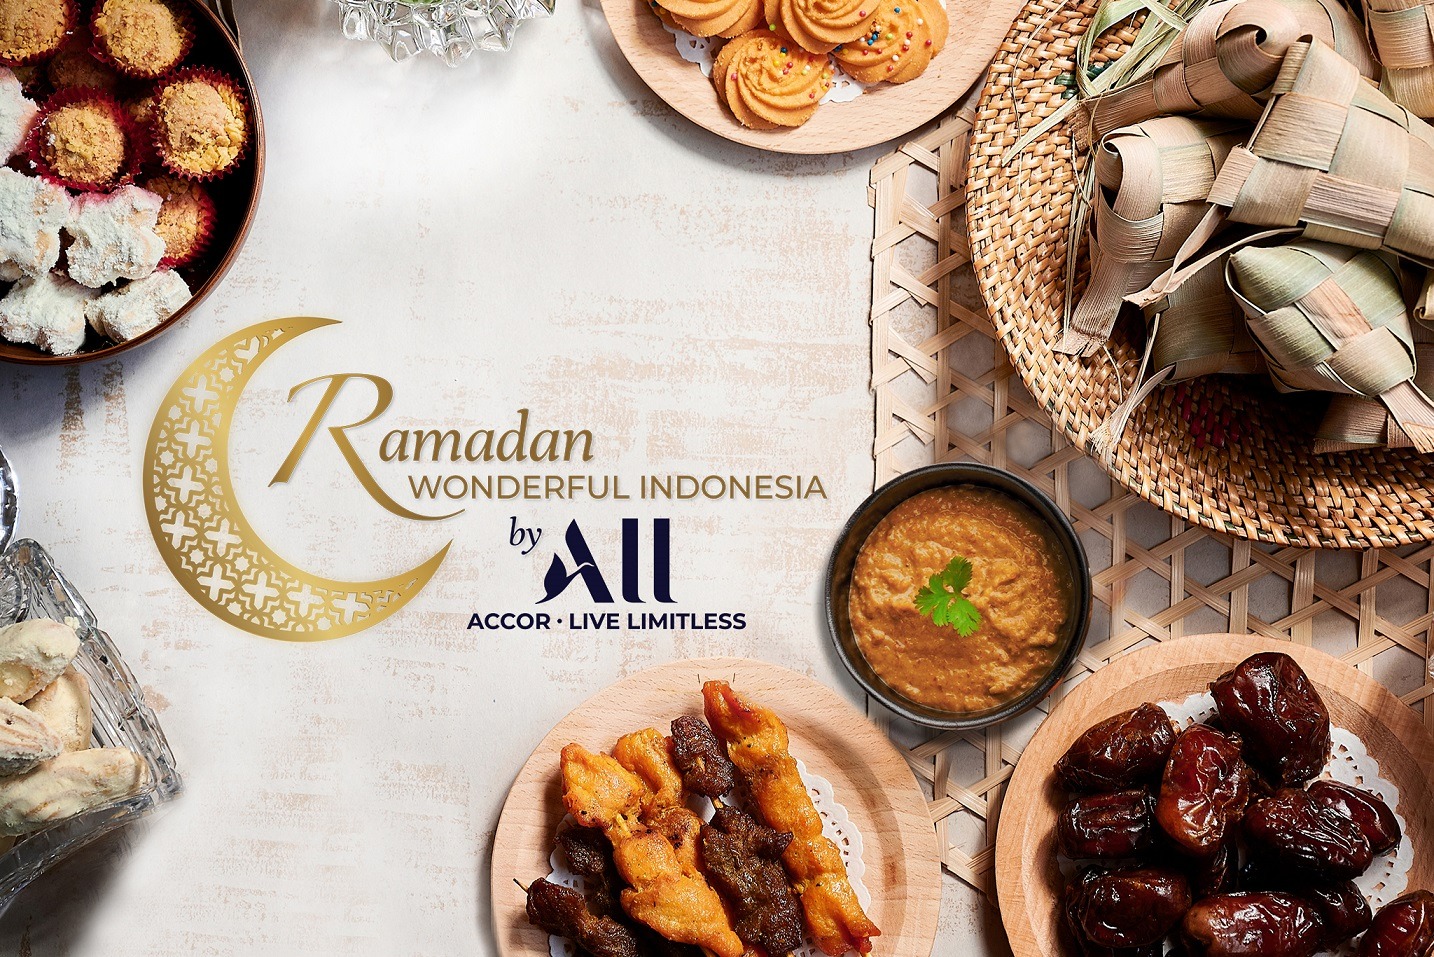 Hotel Novotel Pekanbaru Undang Para Tamu Rayakan Ramadan di Wonderful Indonesia